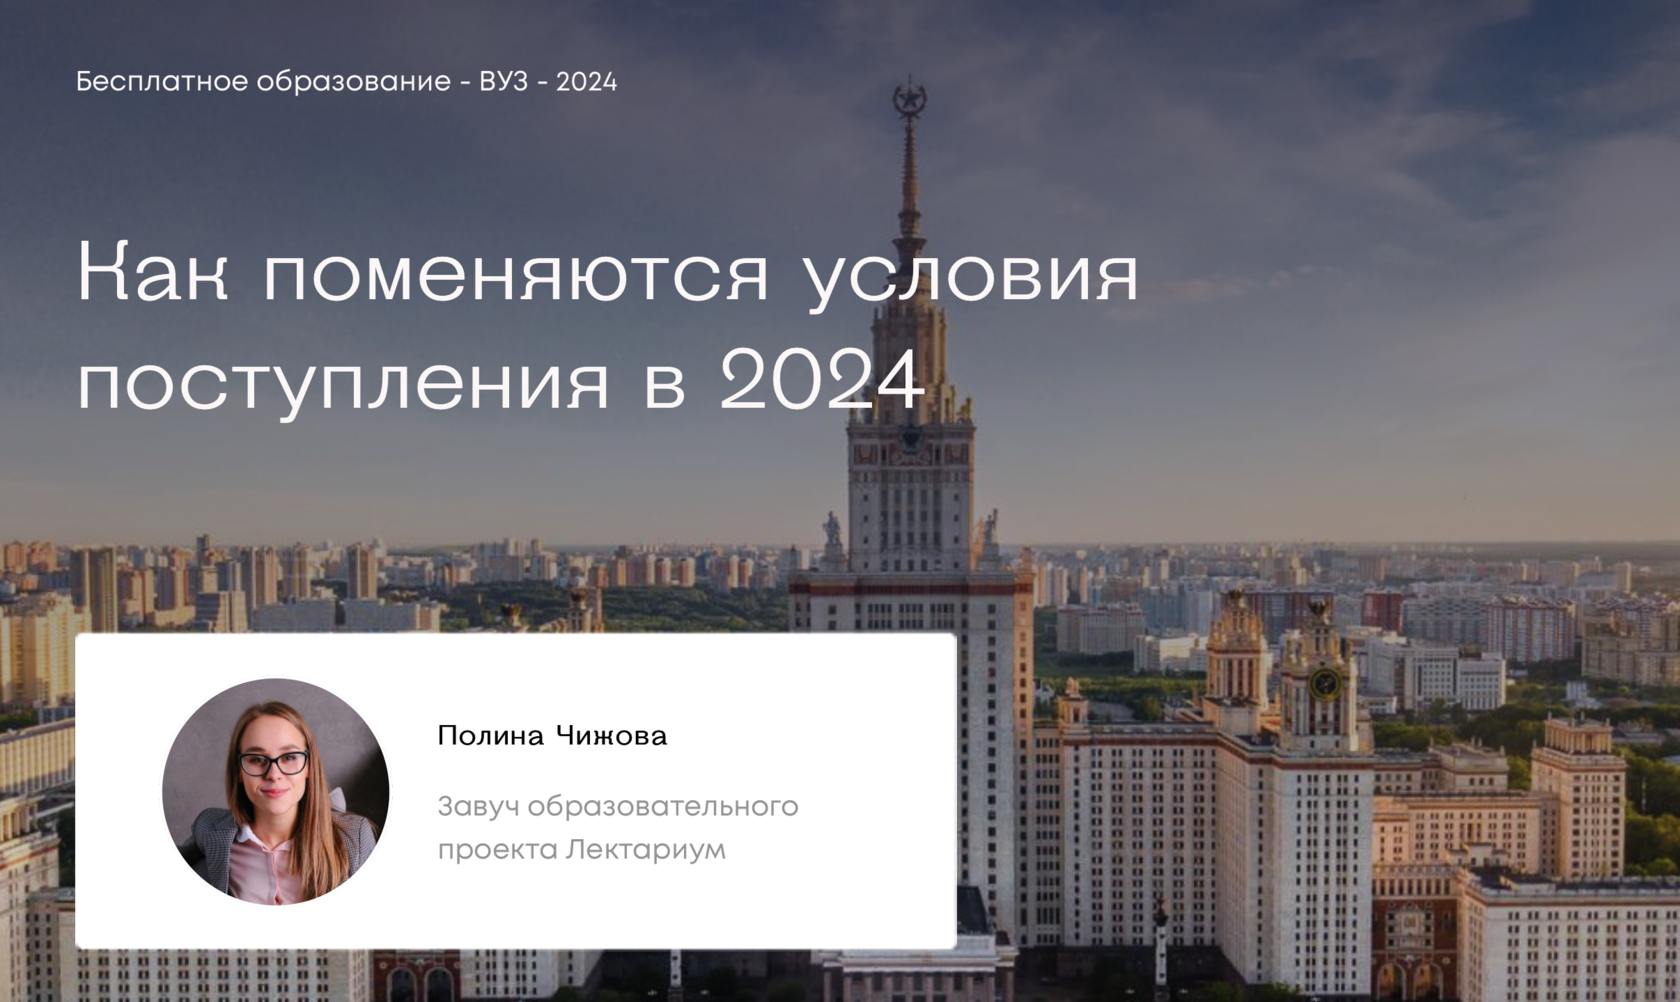 Россия мои горизонты март 2024 спо. Стратегии образования на 2024 год. Нововведения в образовании в 2024 году. Реформа высшего образования.